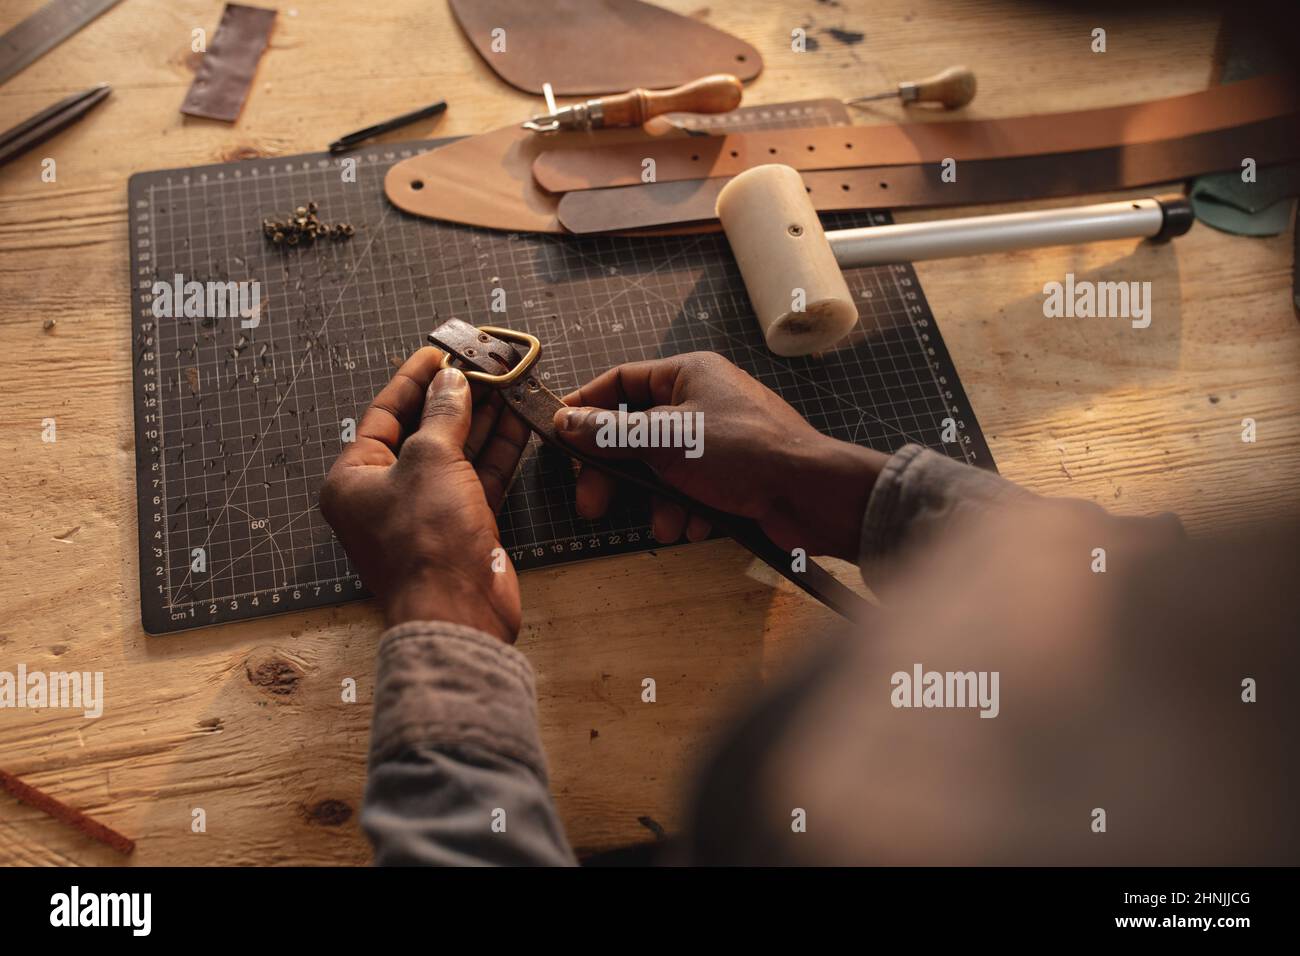 Beschnittene Hände eines jungen afroamerikanischen Handwerkers, der an der Werkbank eine Schnalle am Ledergürtel festhält Stockfoto